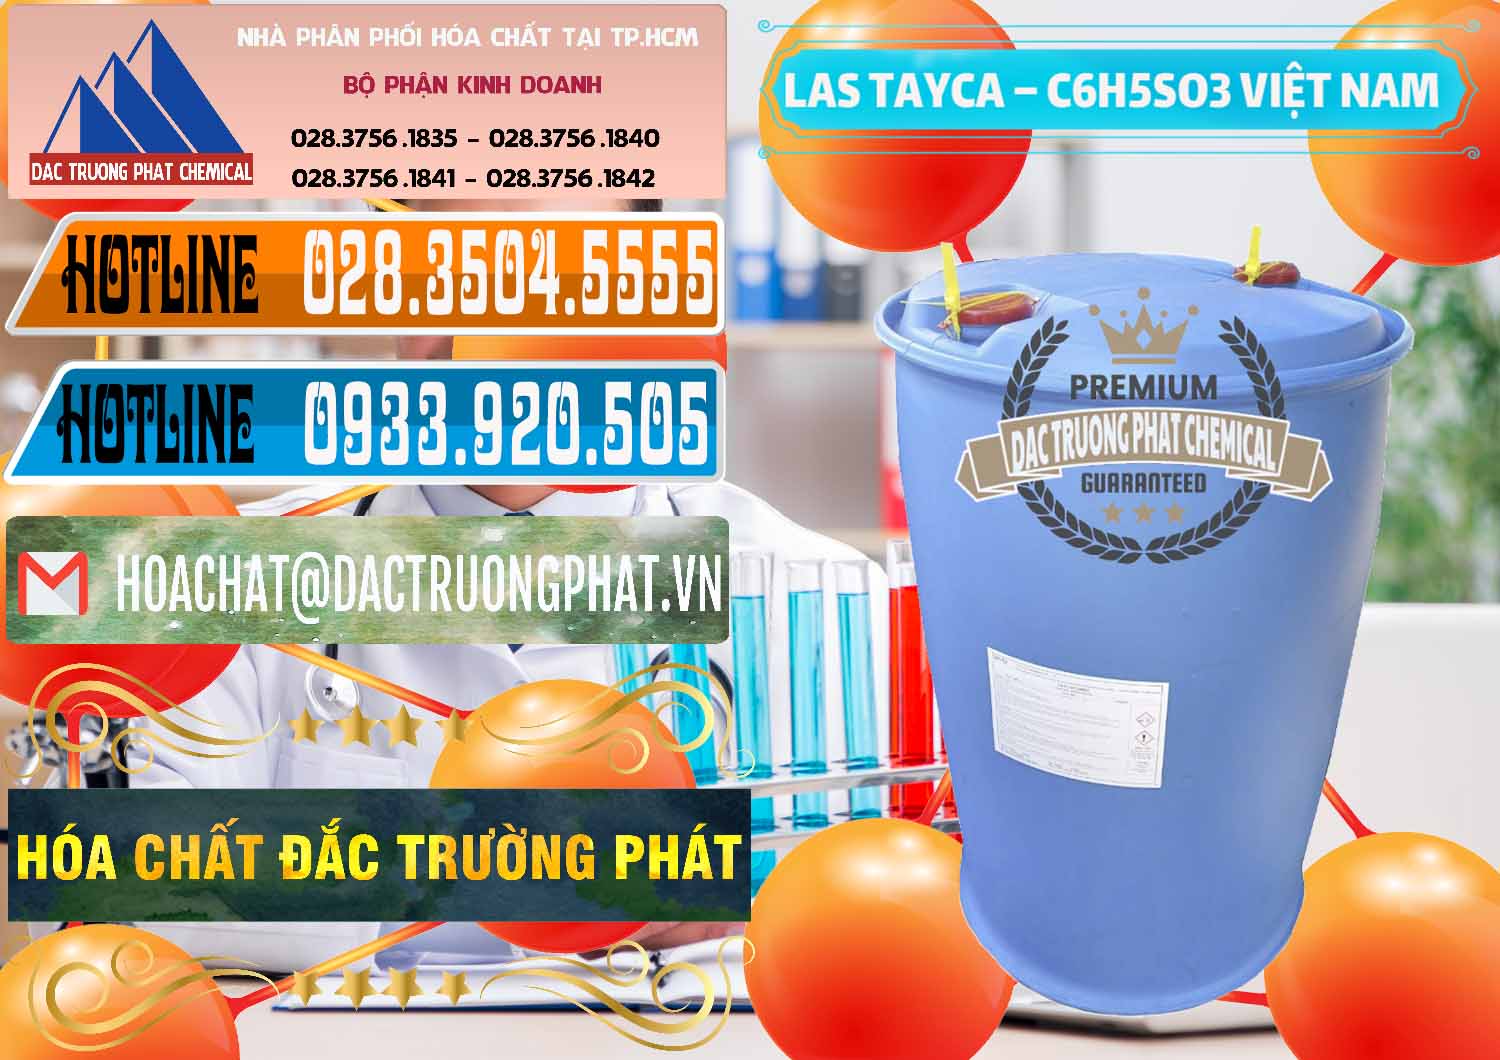 Chuyên bán & cung ứng Chất tạo bọt Las Tayca Việt Nam - 0305 - Cty chuyên bán ( cung ứng ) hóa chất tại TP.HCM - stmp.net